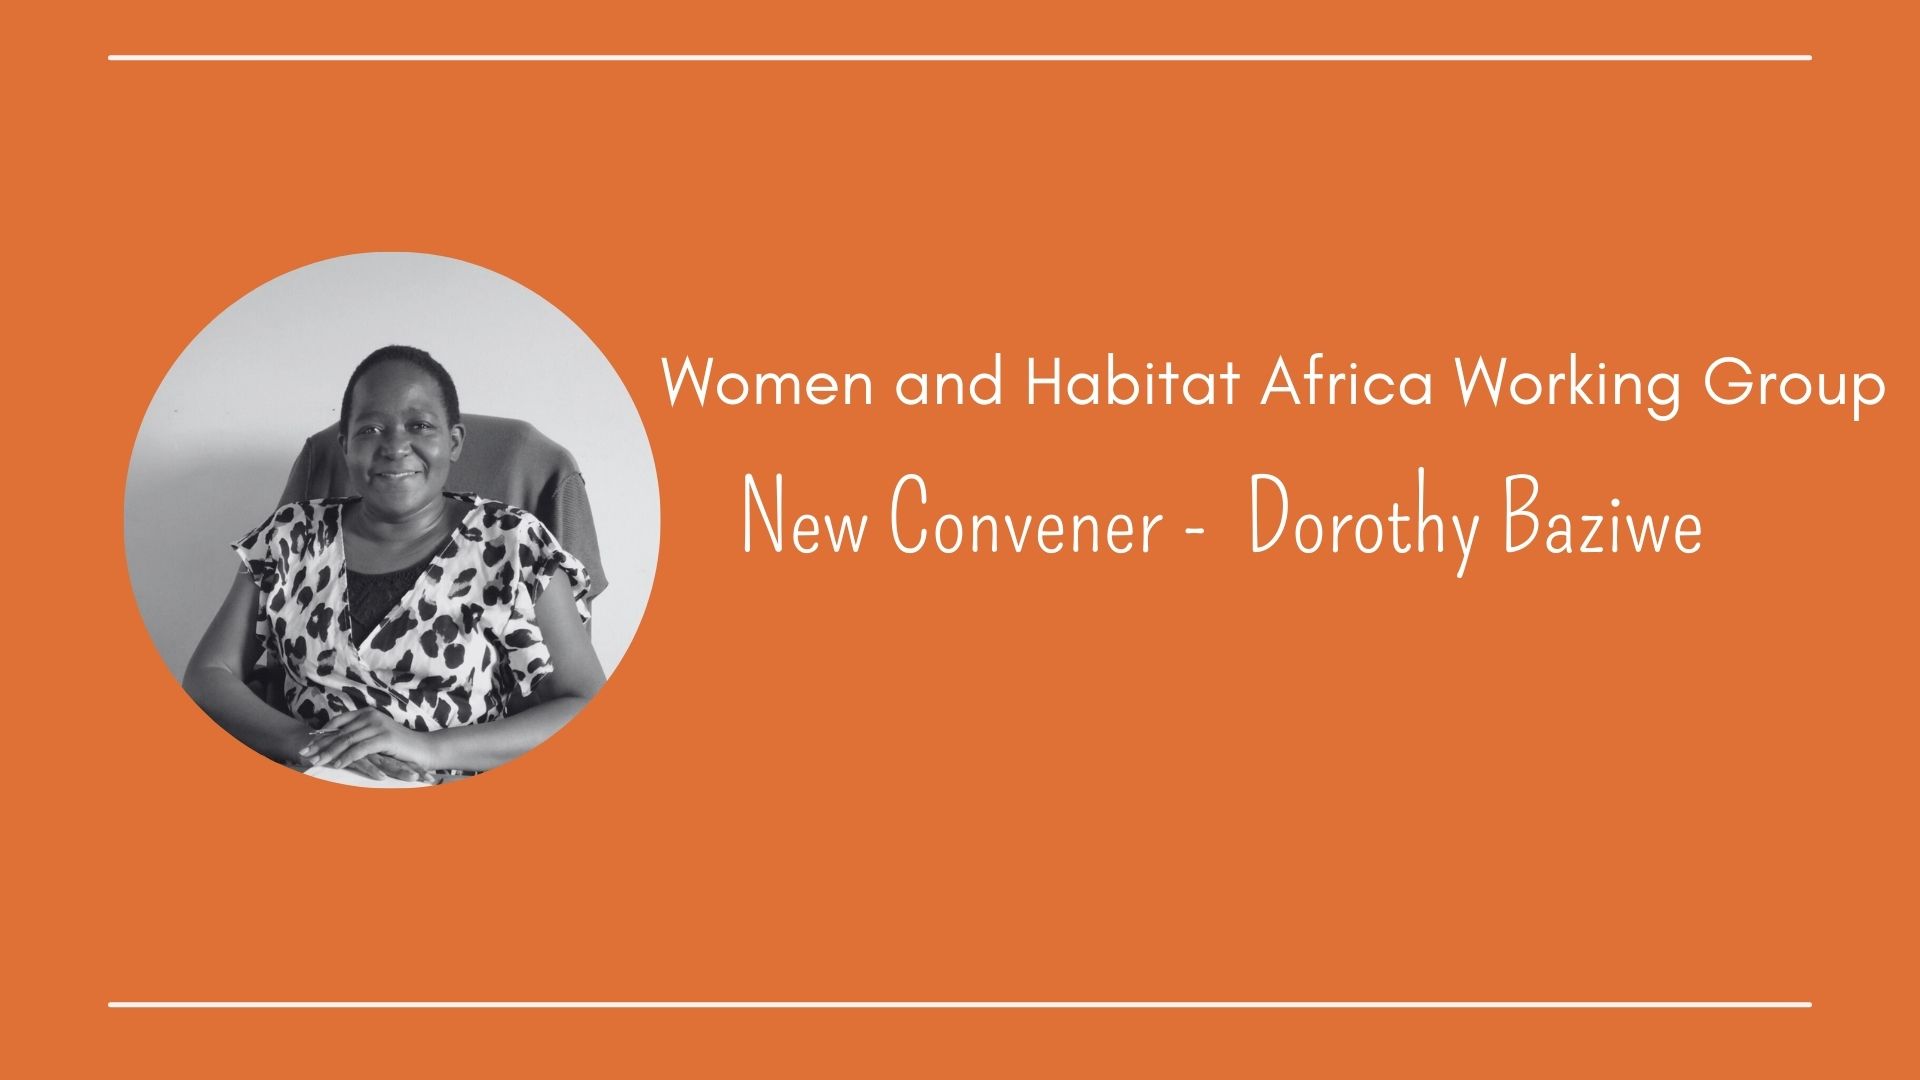 Le groupe de travail de HIC sur les femmes et l’habitat en Afrique (WHAWG) nomme une nouvelle coordinatrice